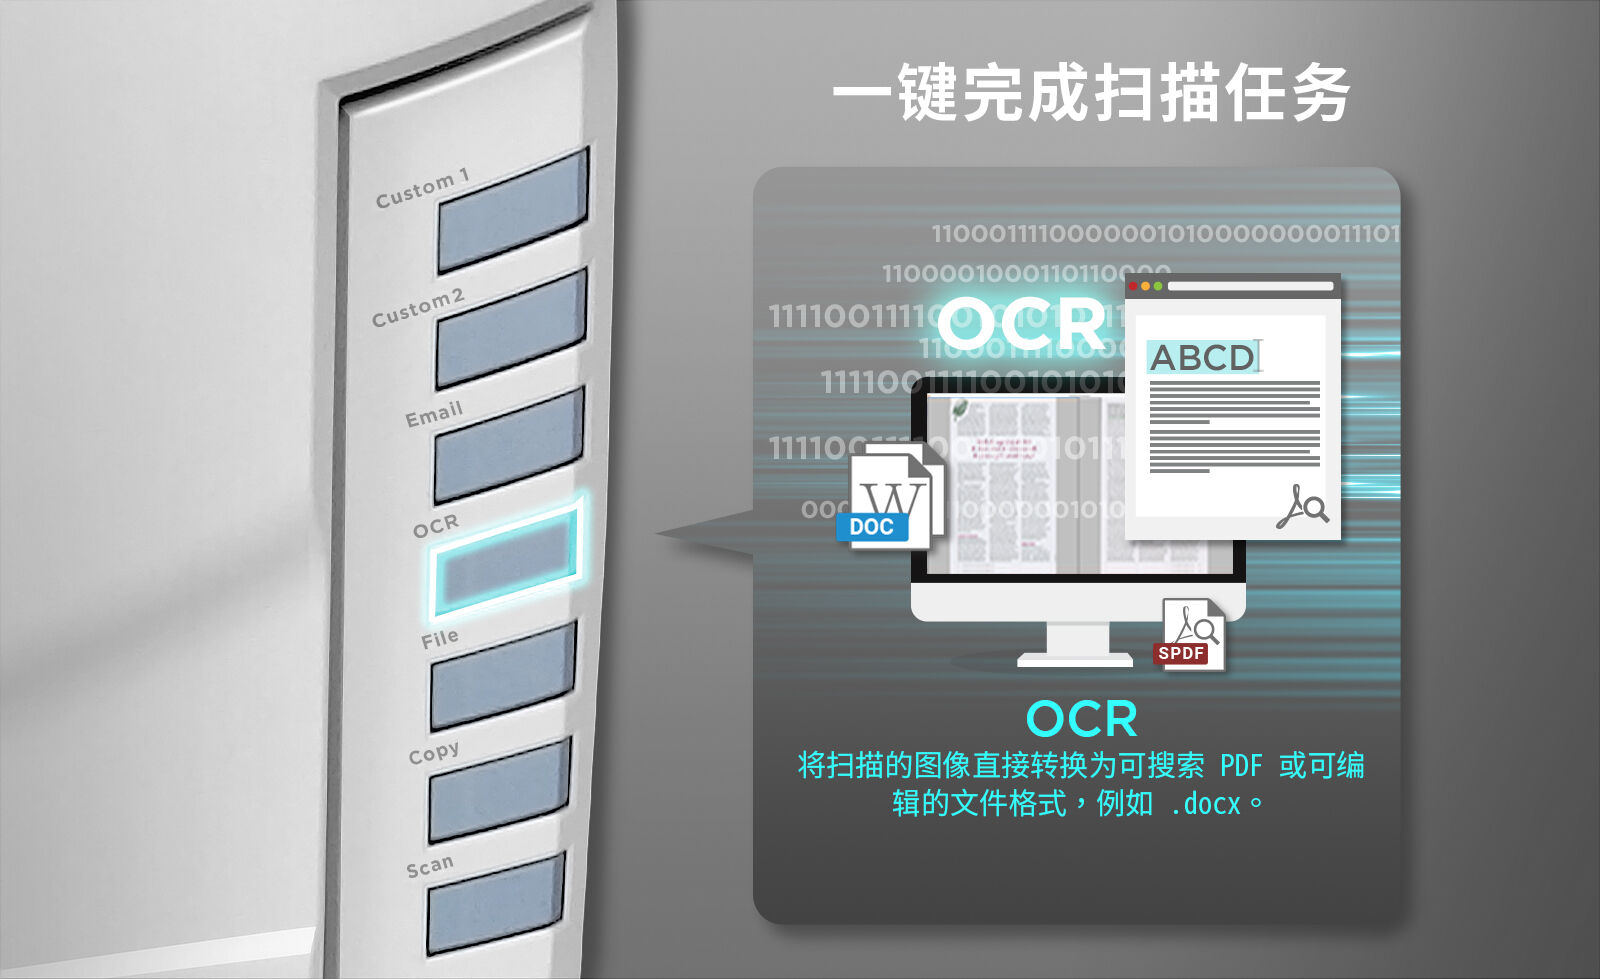 OCR 按钮- 光学字符辨识功能，将扫描影像转换成可编辑和可搜索的文件格式，例如 word 或可搜索 PDF。